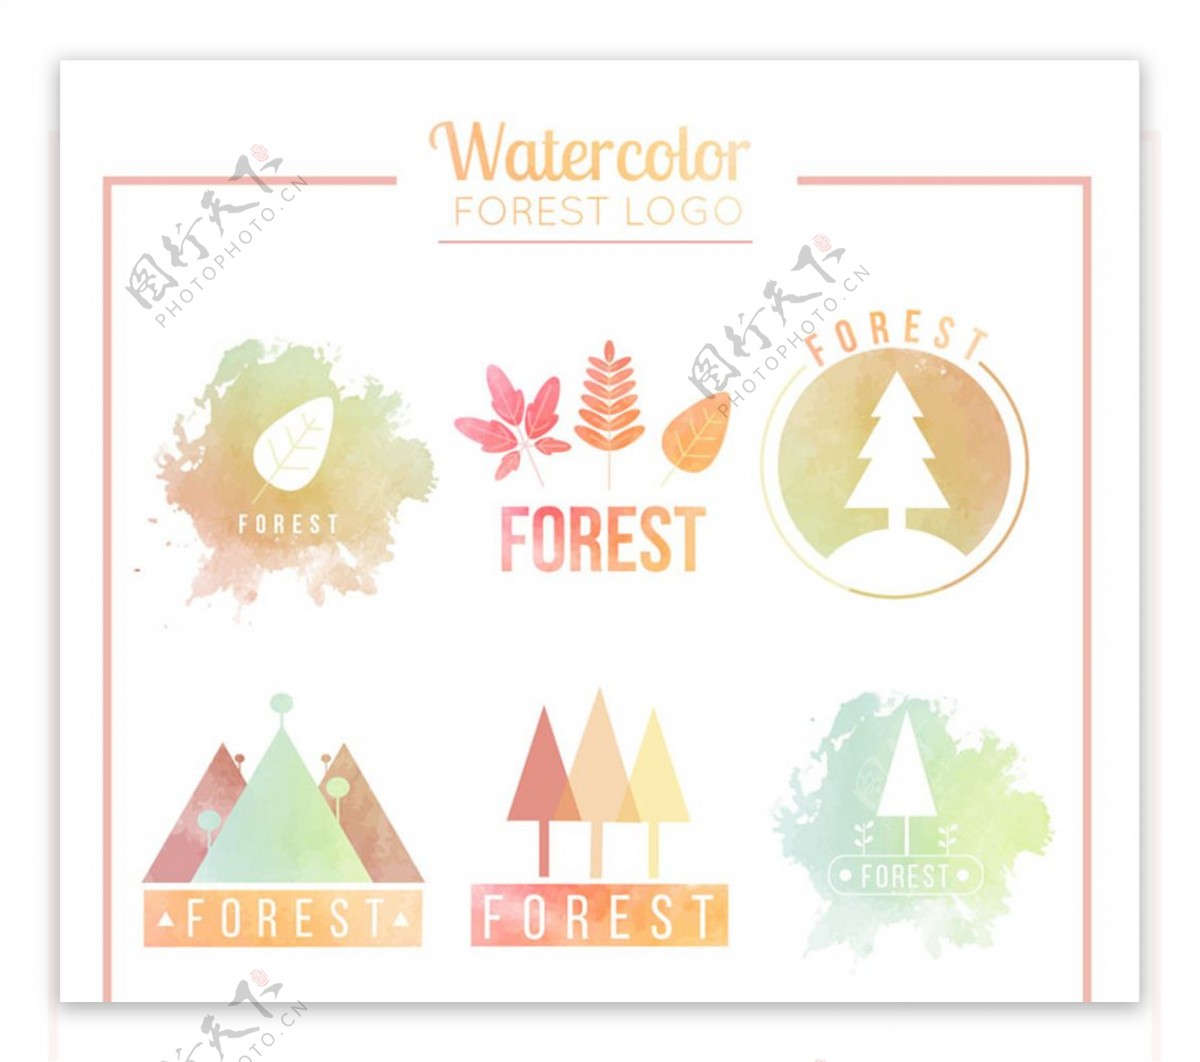 6款水彩绘森林标志矢量素材